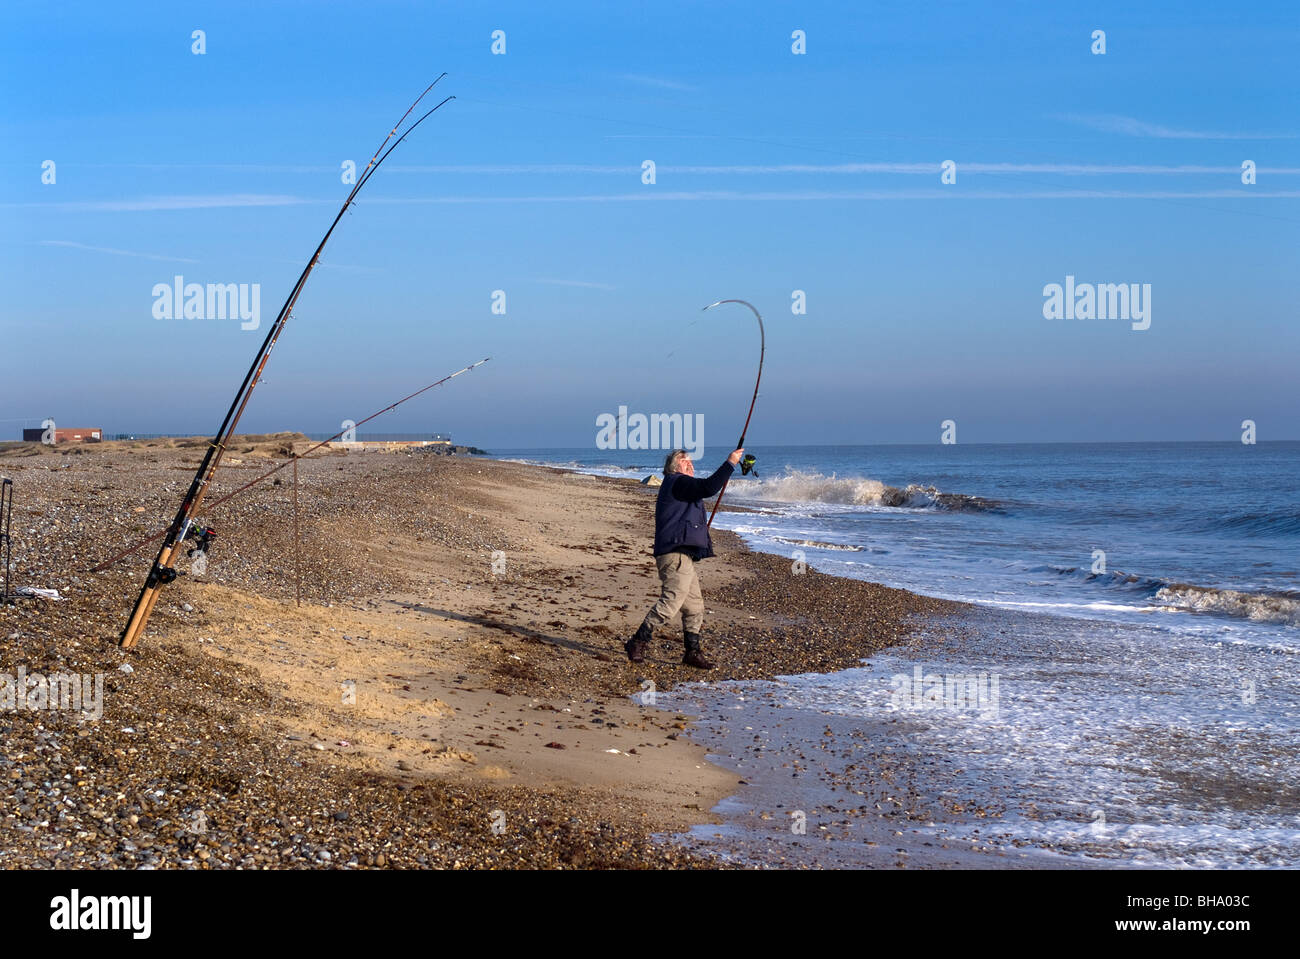 Fisherman casting avec roulettes plage mer canne à pêche à benacre suffolk angleterre Banque D'Images